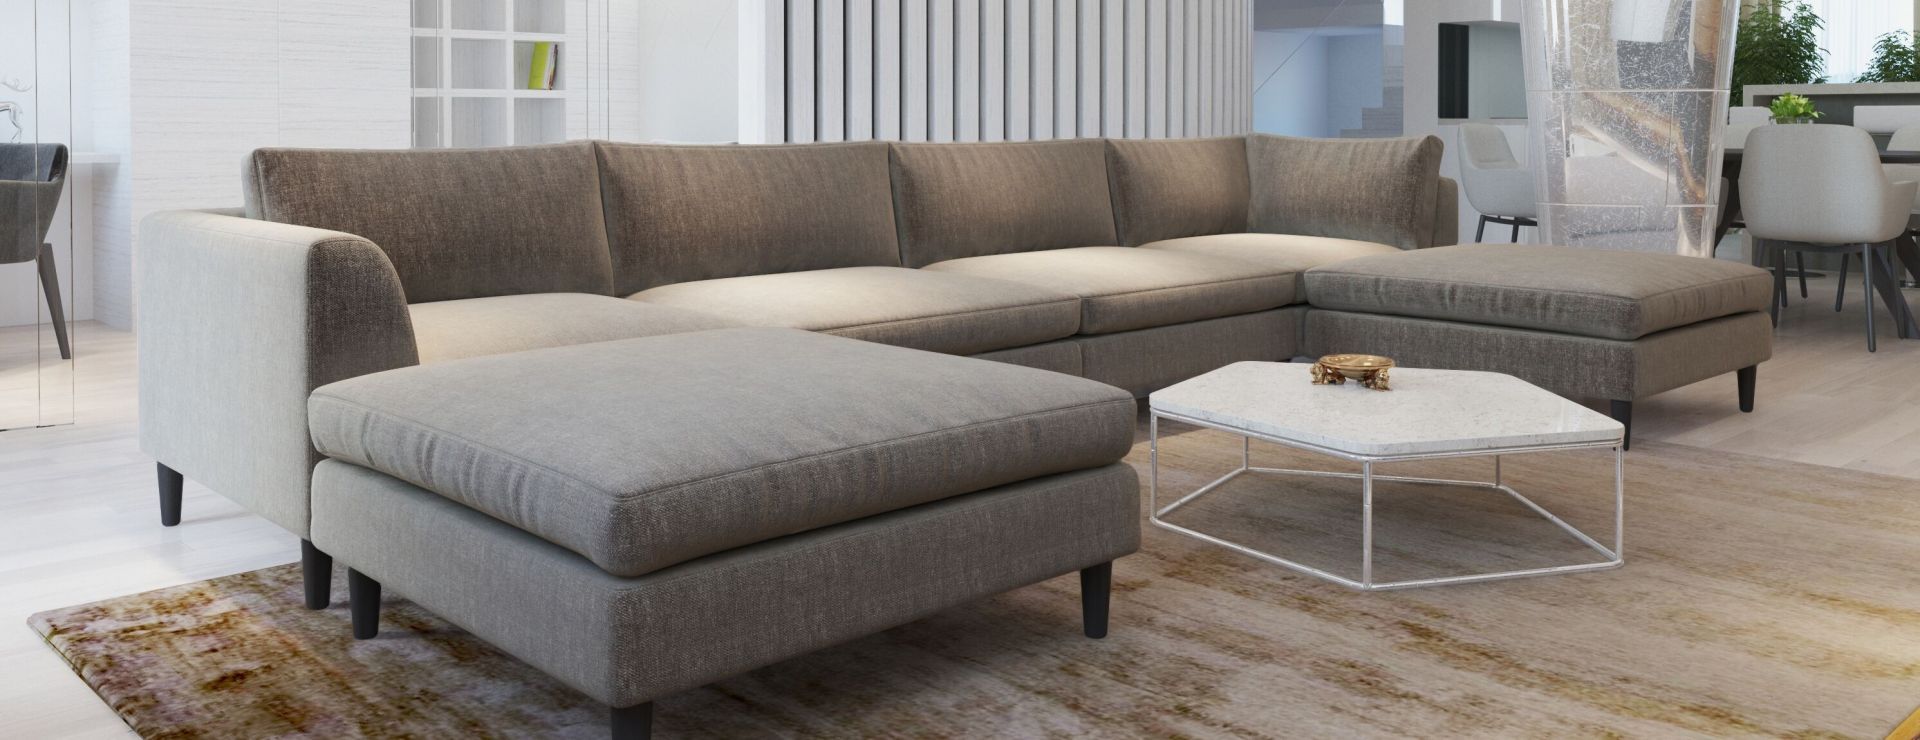 П-образный диван в интерьере: на что обратить внимание?